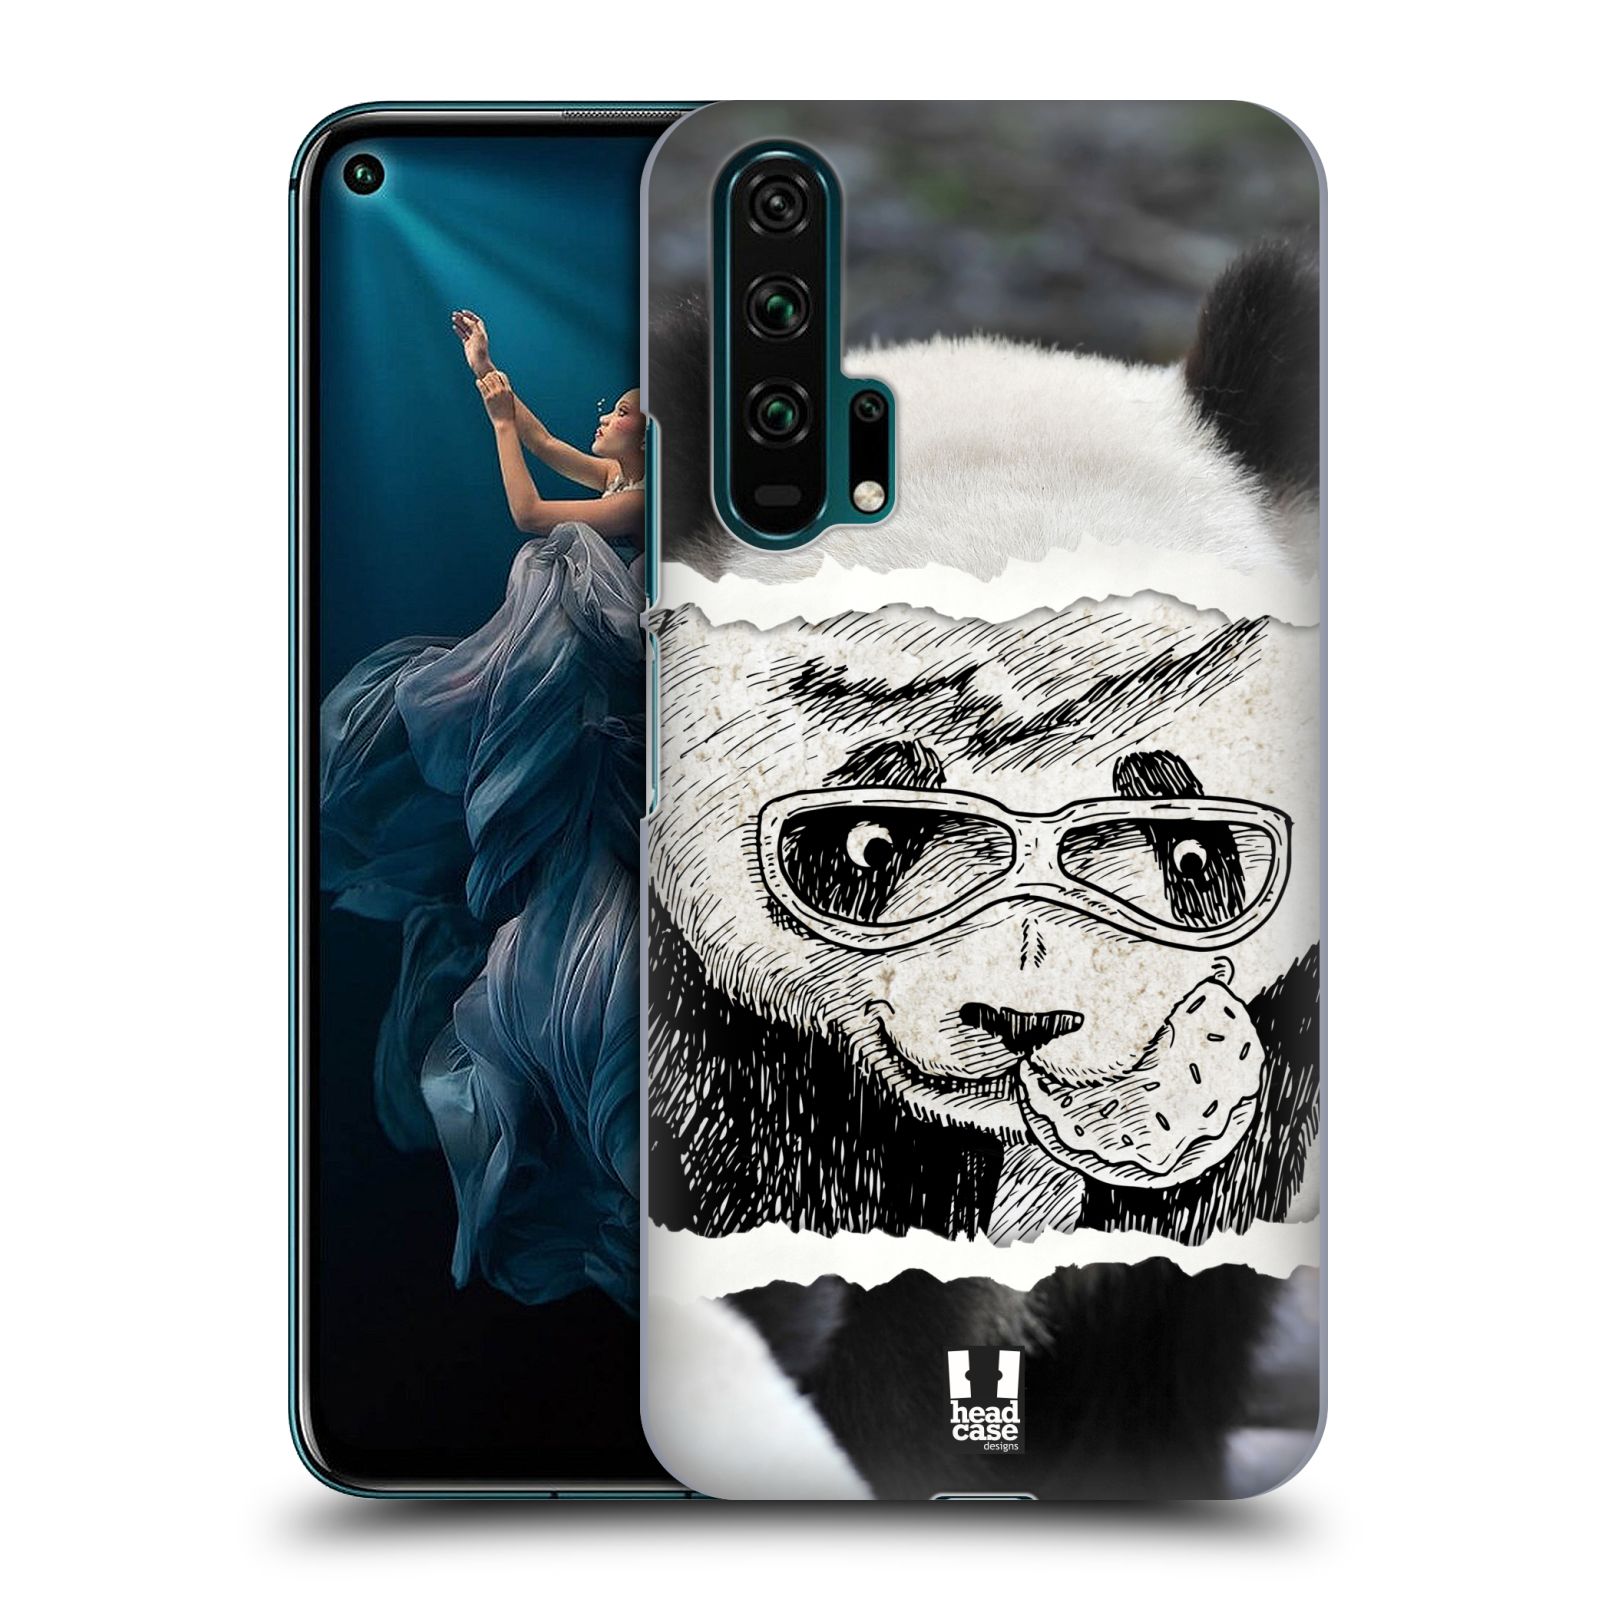 Pouzdro na mobil Honor 20 PRO - HEAD CASE - vzor zvířata koláž roztomilá panda